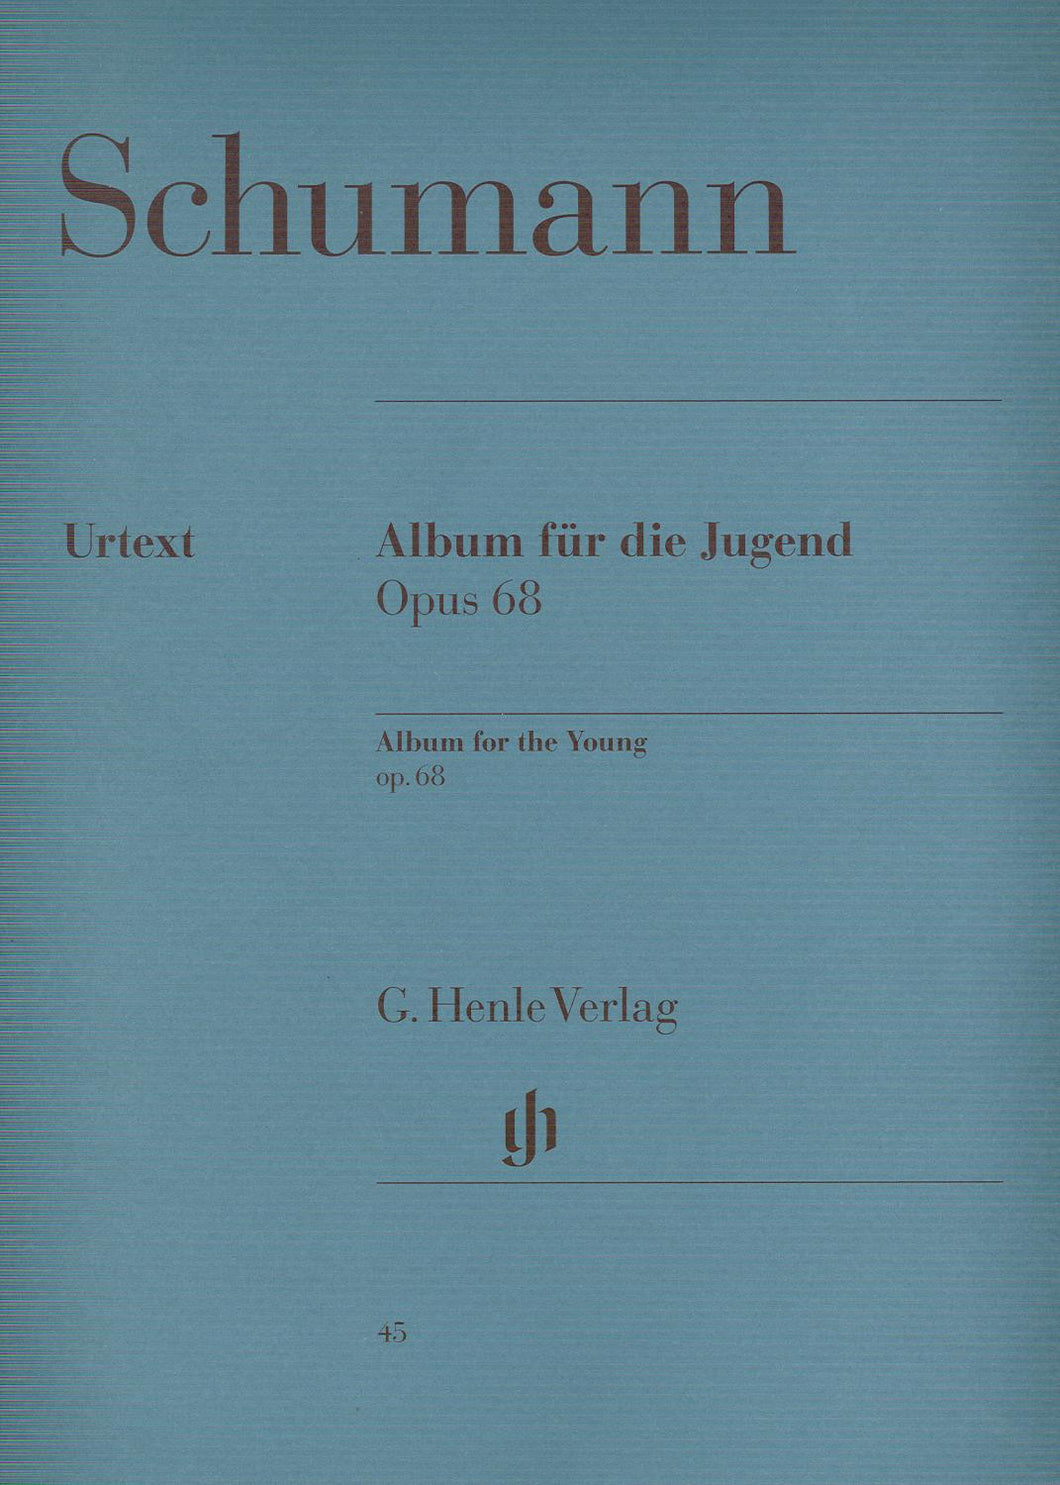 ROBERT SCHUMANN: Album for the Young op. 68